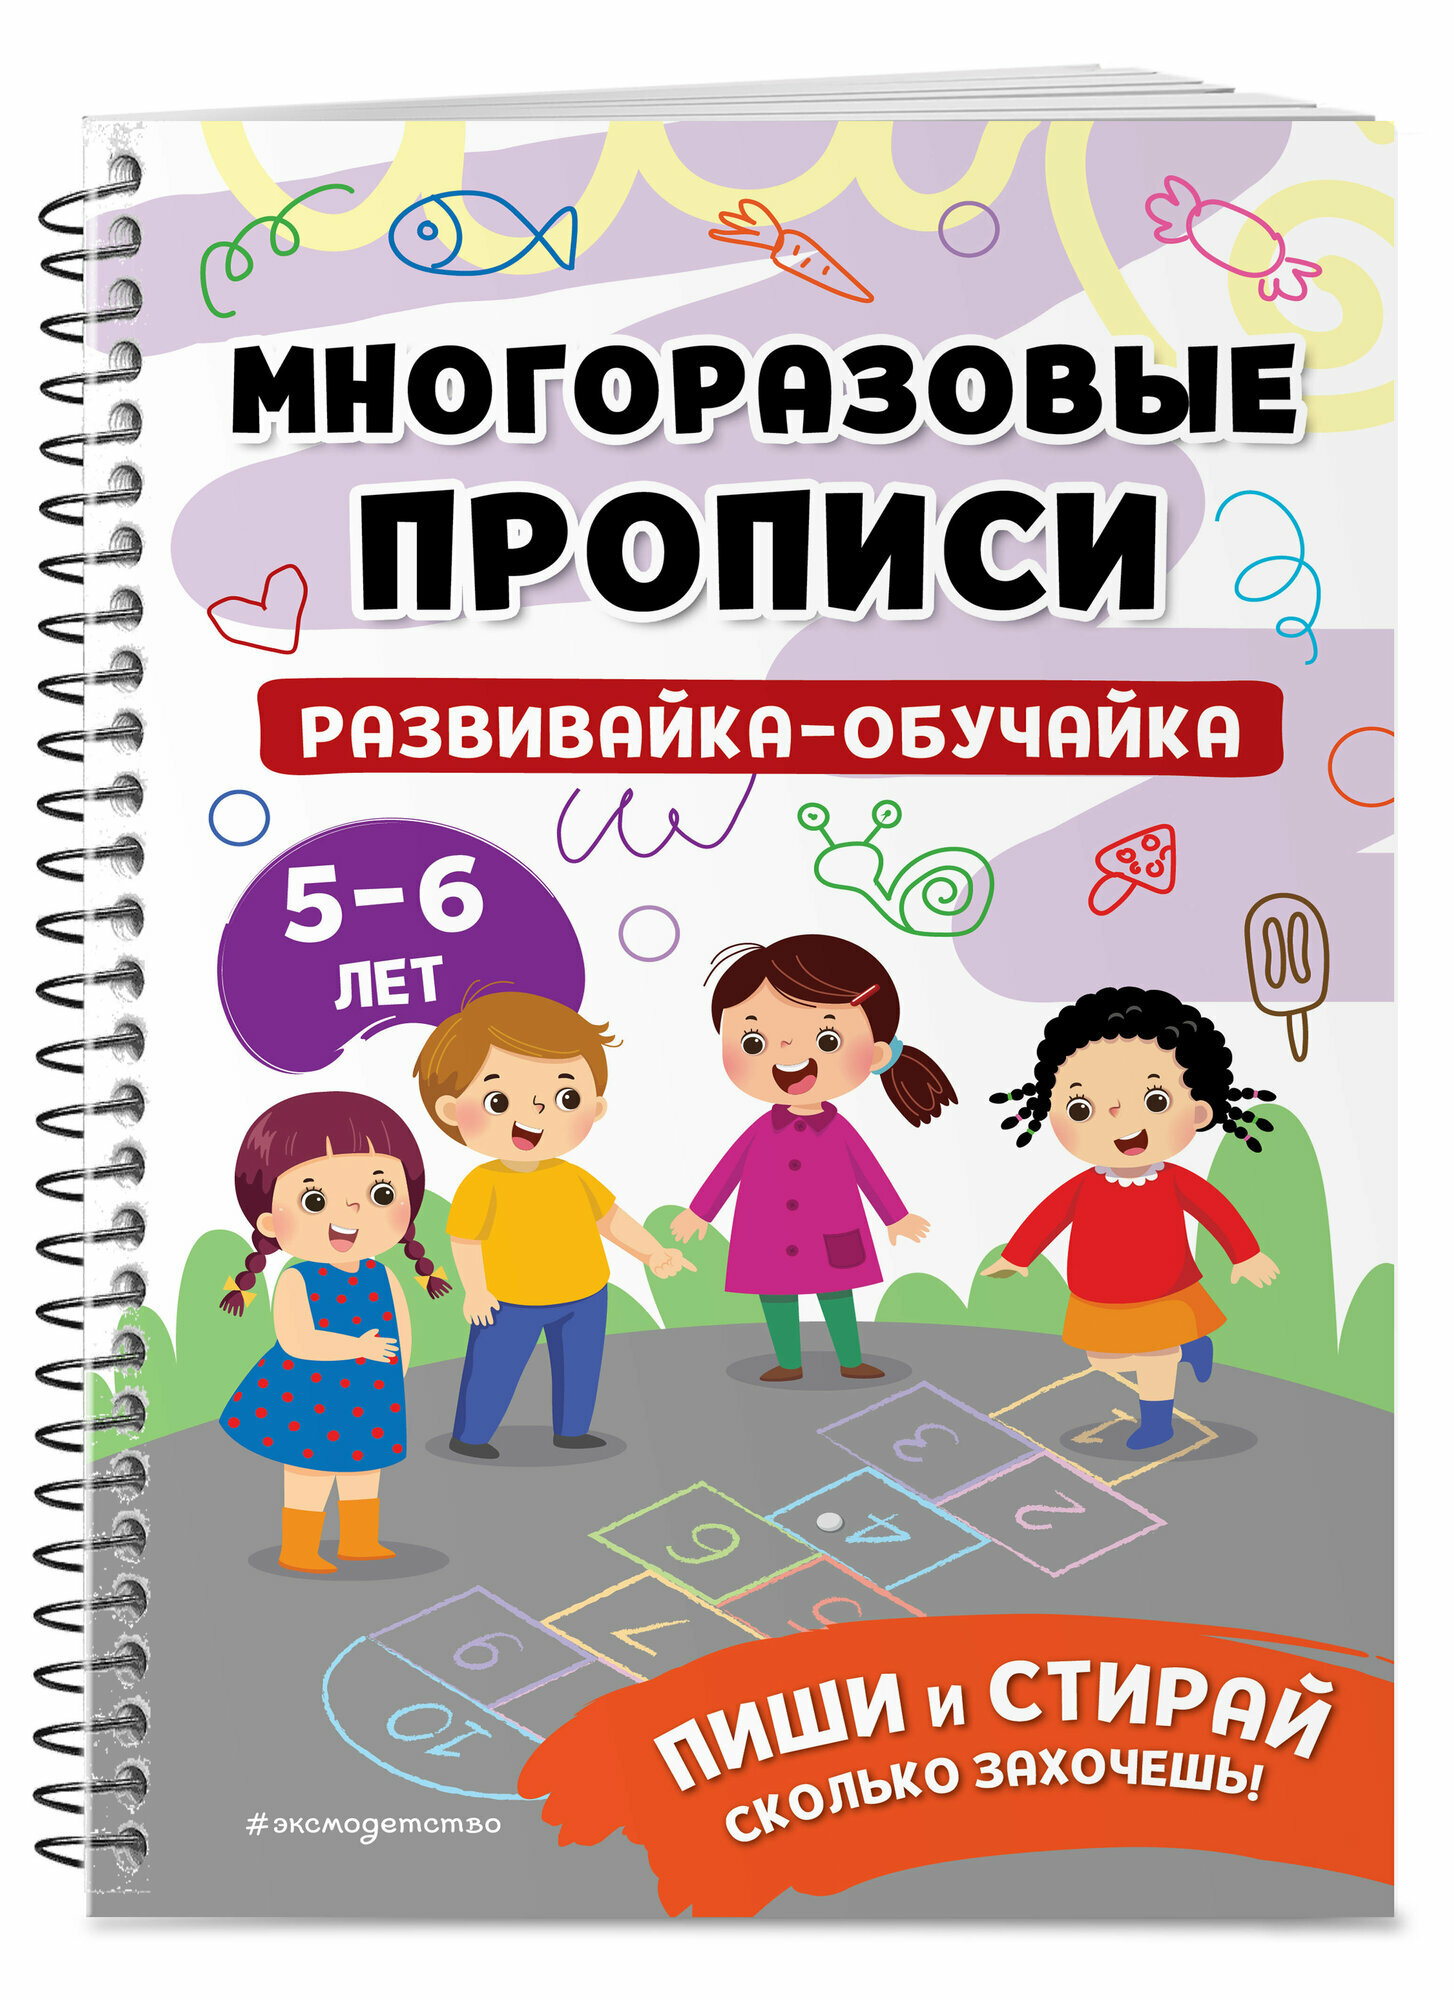 Развивайка-обучайка для детей 5-6 лет - фото №5